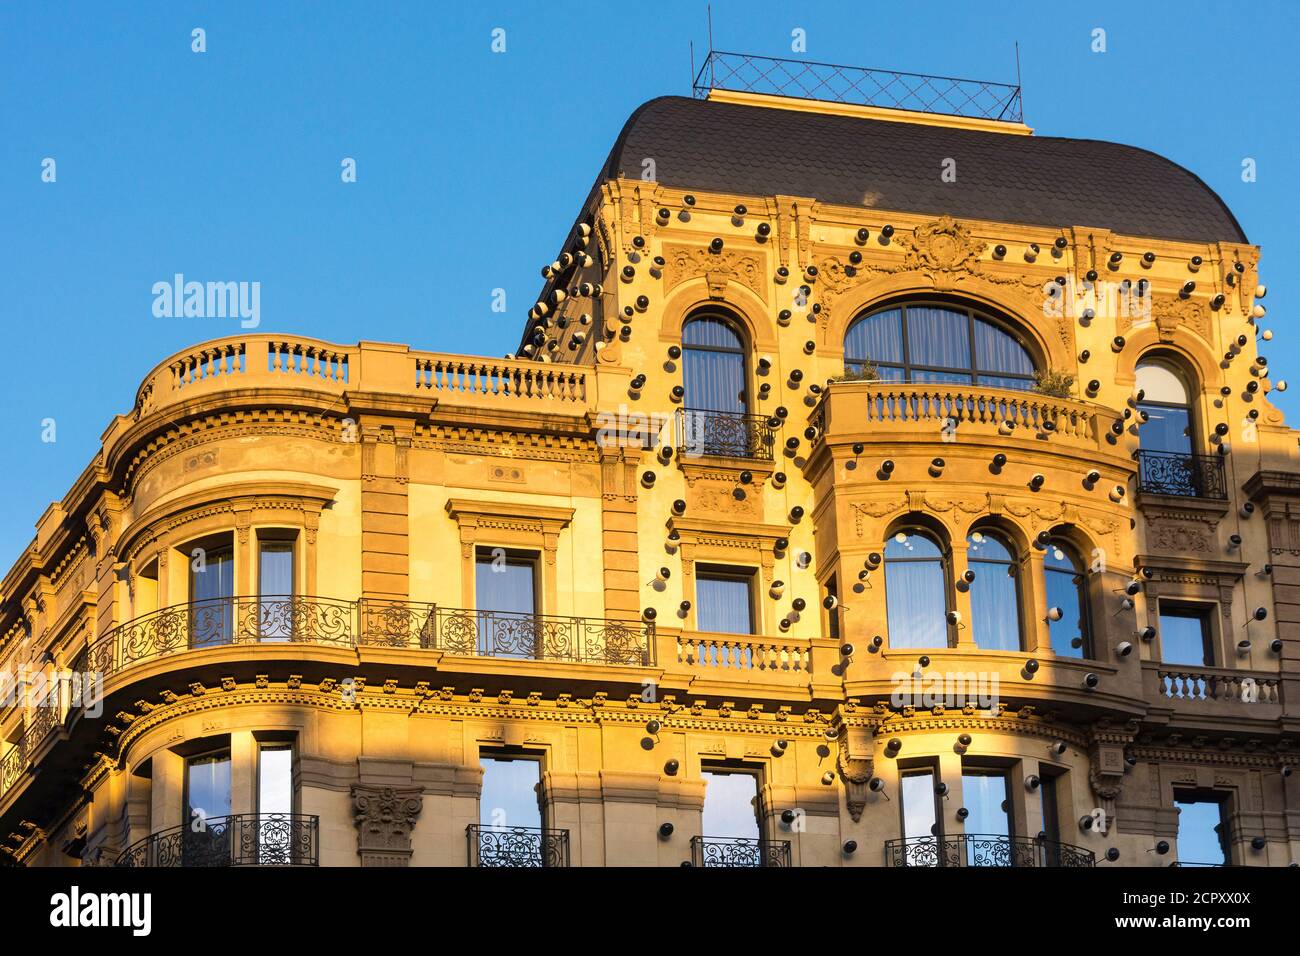 Barcelona, Via Laietana, facade in the morning light Stock Photo